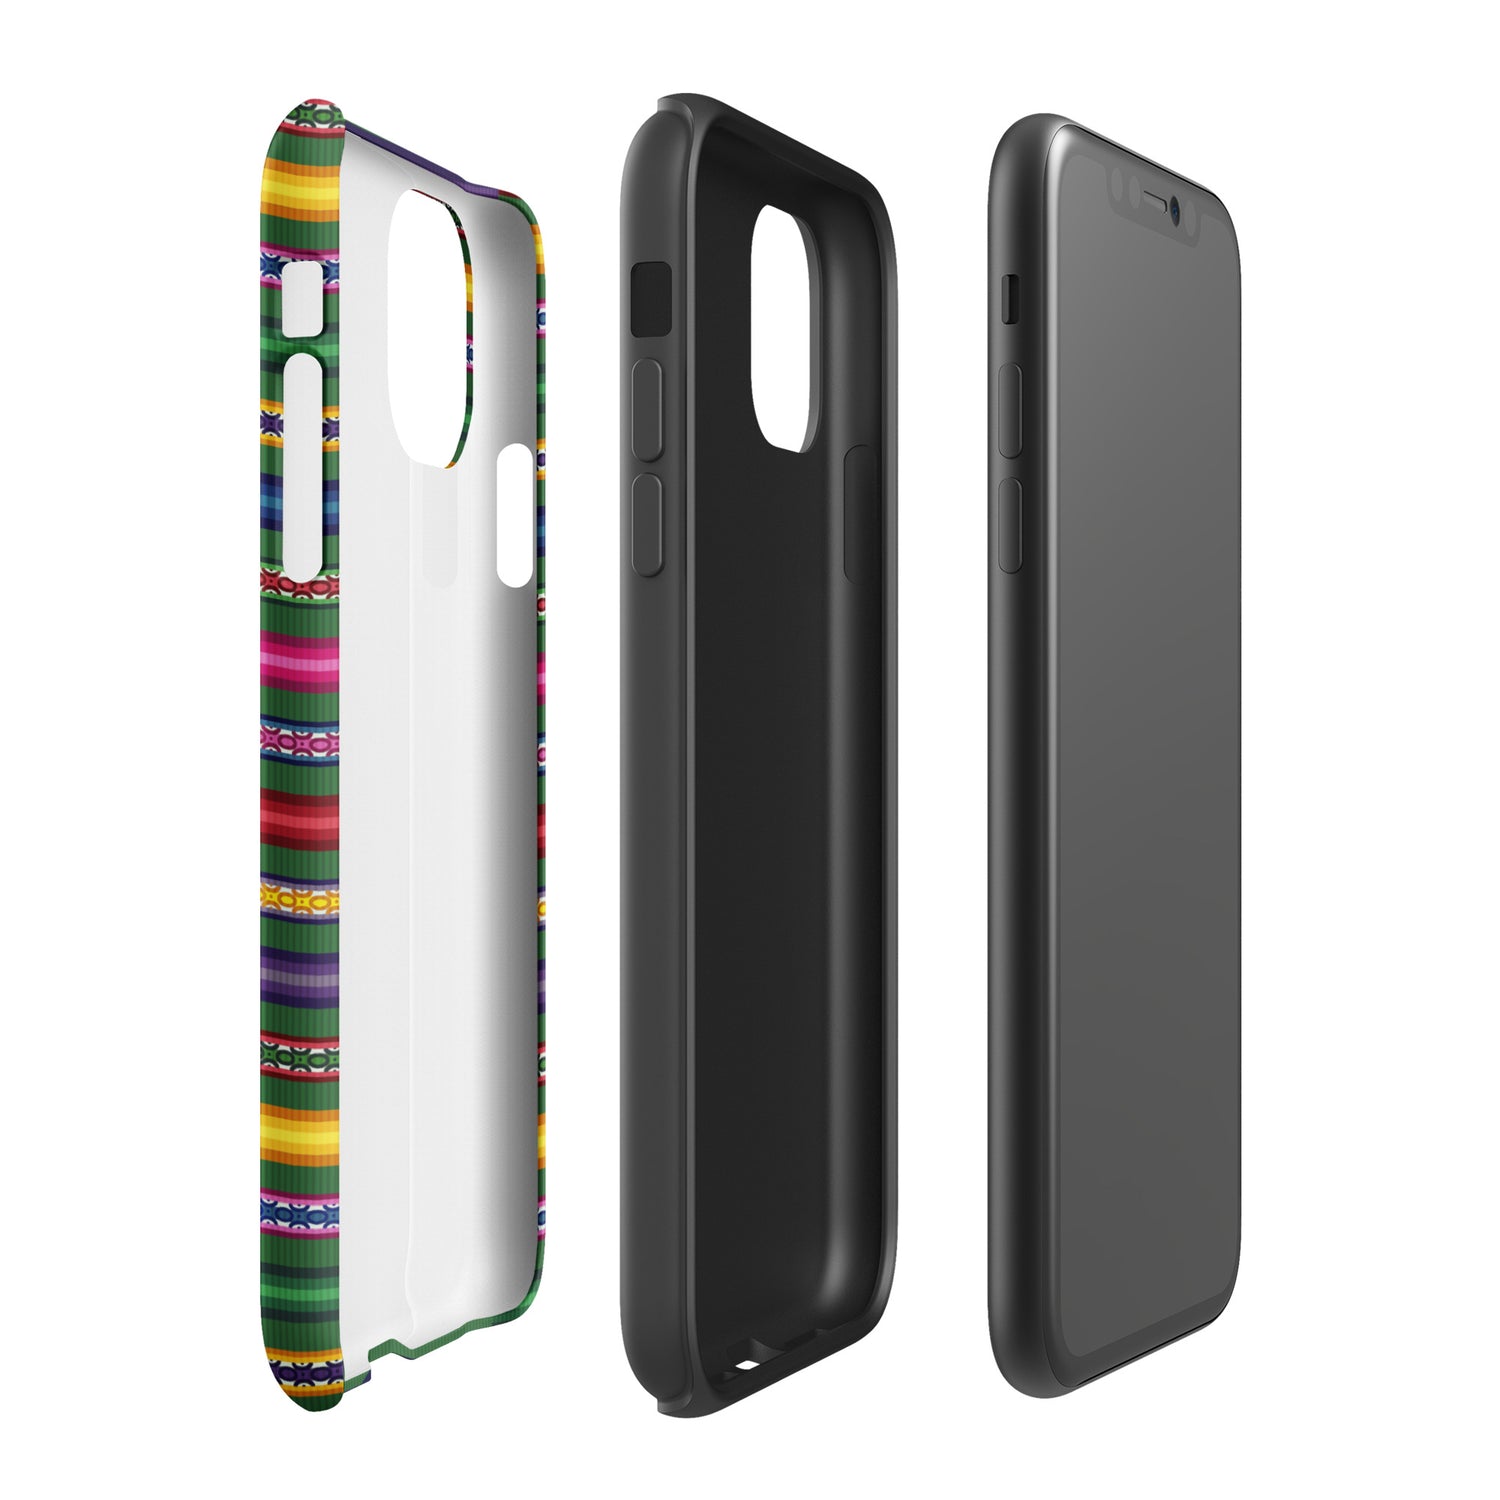 Peruvian Tough iPhone case